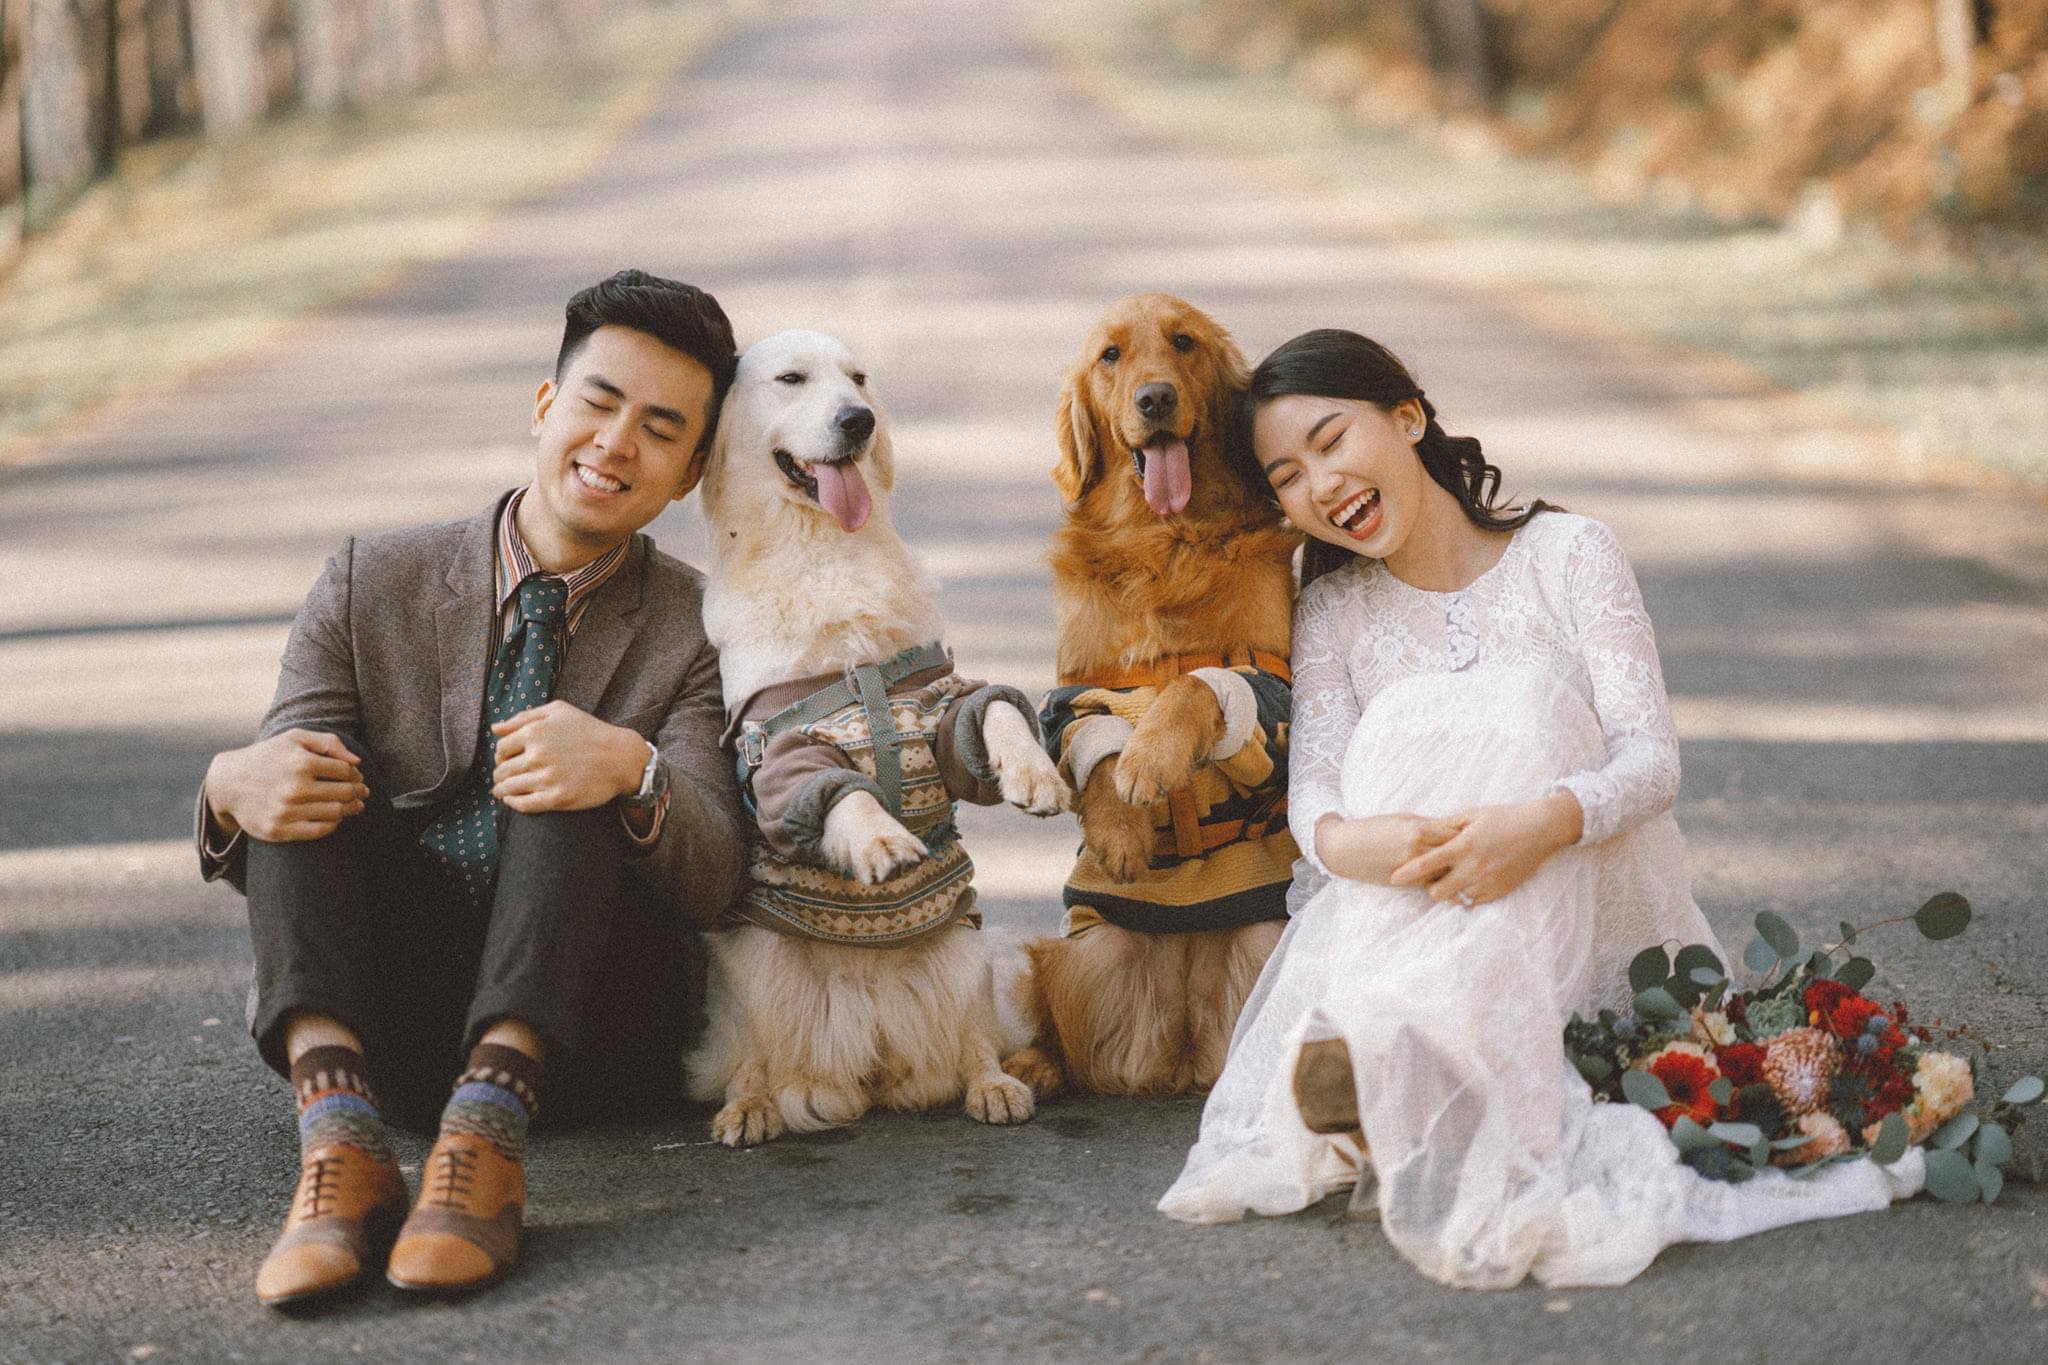 Hãy xem những ảnh cưới với chú chó cưng đáng yêu nhất mà bạn từng thấy! Với sự gần gũi, trung thành của chúng ta đã chụp được những bức ảnh tuyệt vời trong ngày trọng đại. Hãy tìm hiểu về niềm đam mê chung của cặp đôi mới cưới đối với thú cưng của mình.